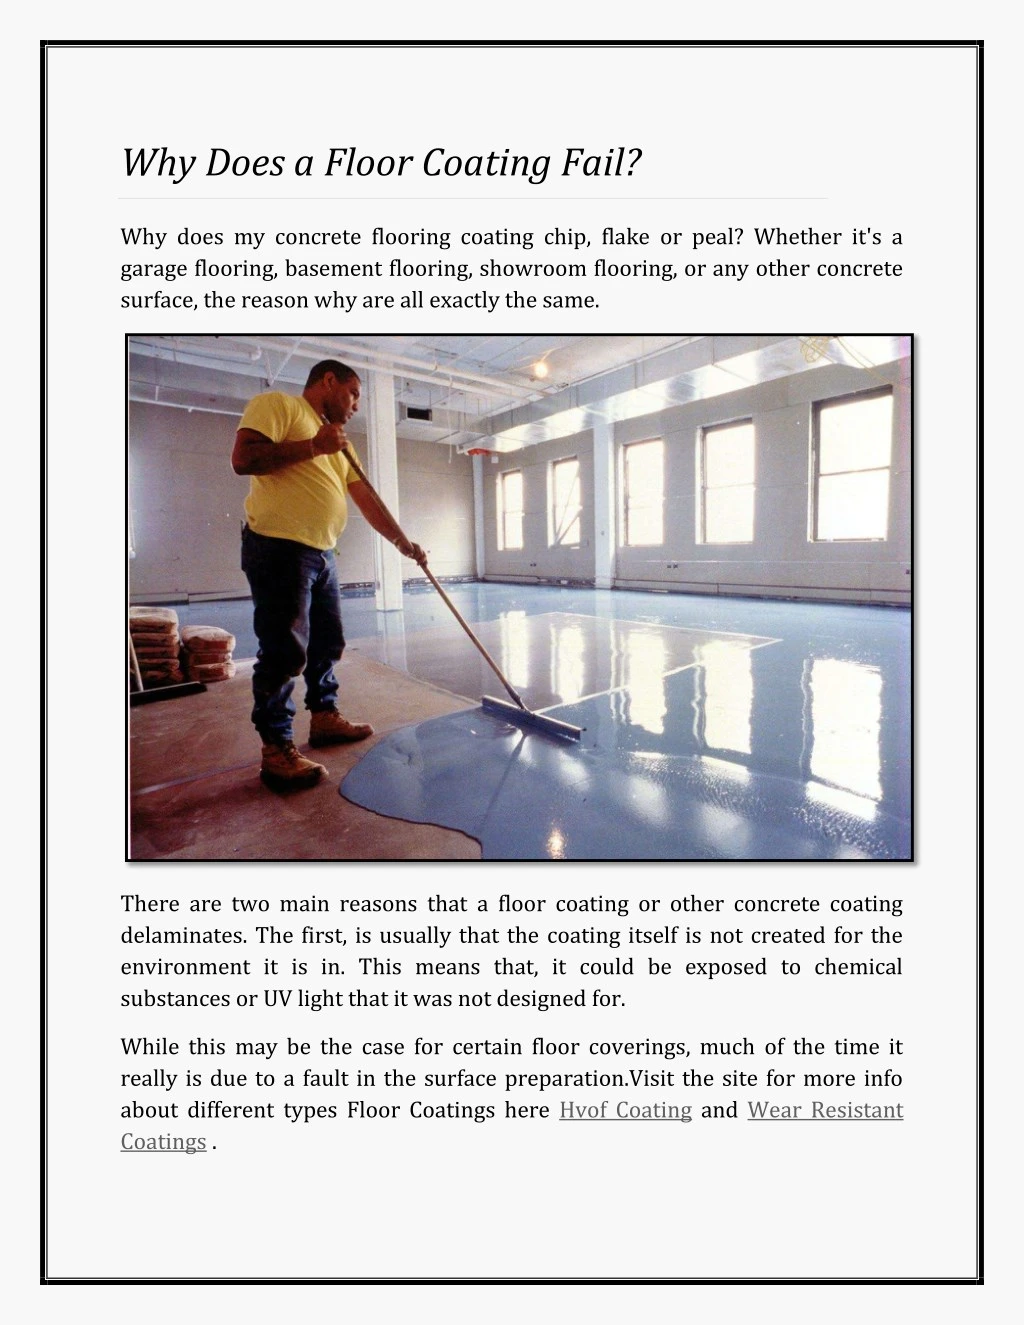 why does a floor coating fail